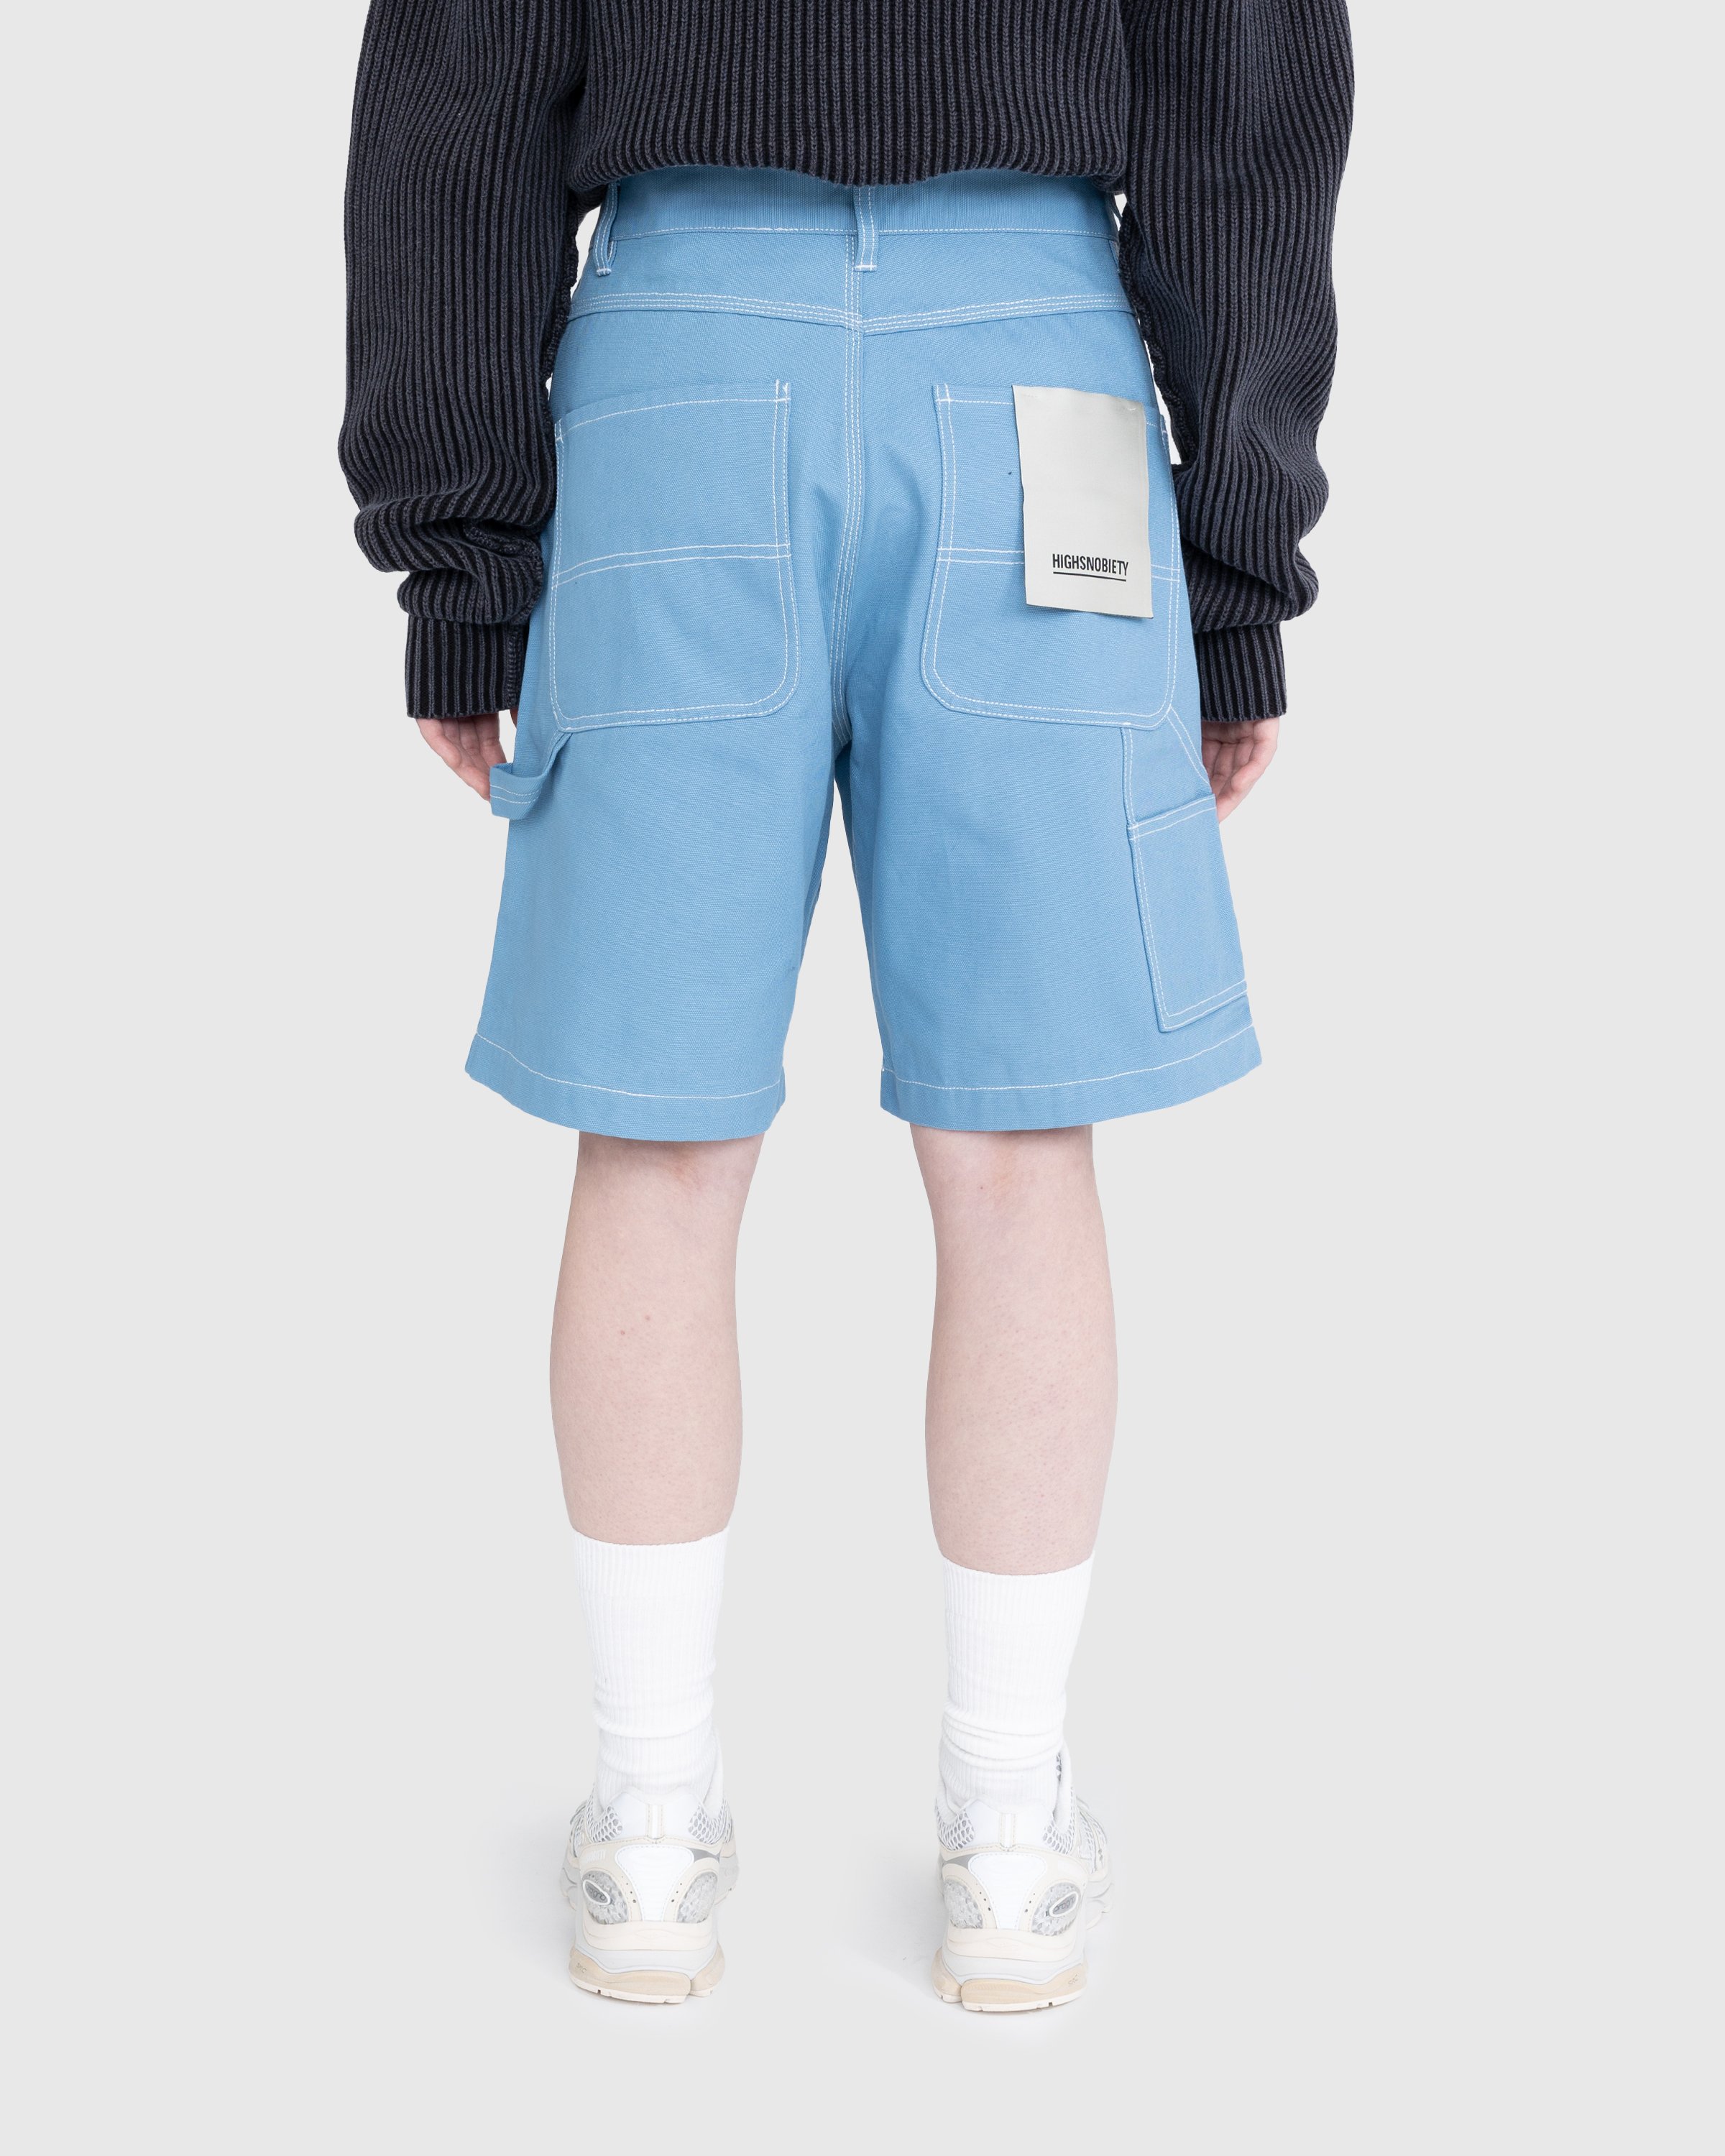 Highsnobiety - Carpenter Shorts Light Blue - Clothing - Blue - Image 4